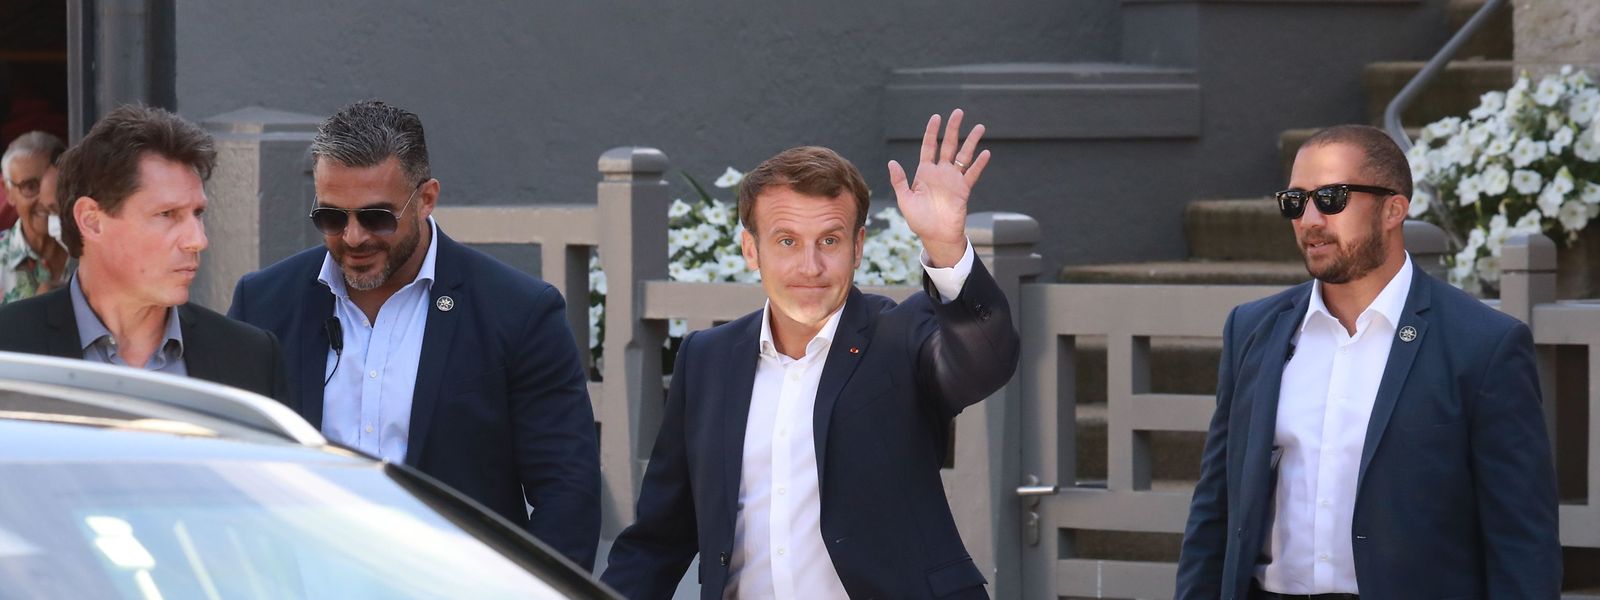 Staatschef Emmanuel Macron wählte im nordfranzösischen Seebad Le Touquet.